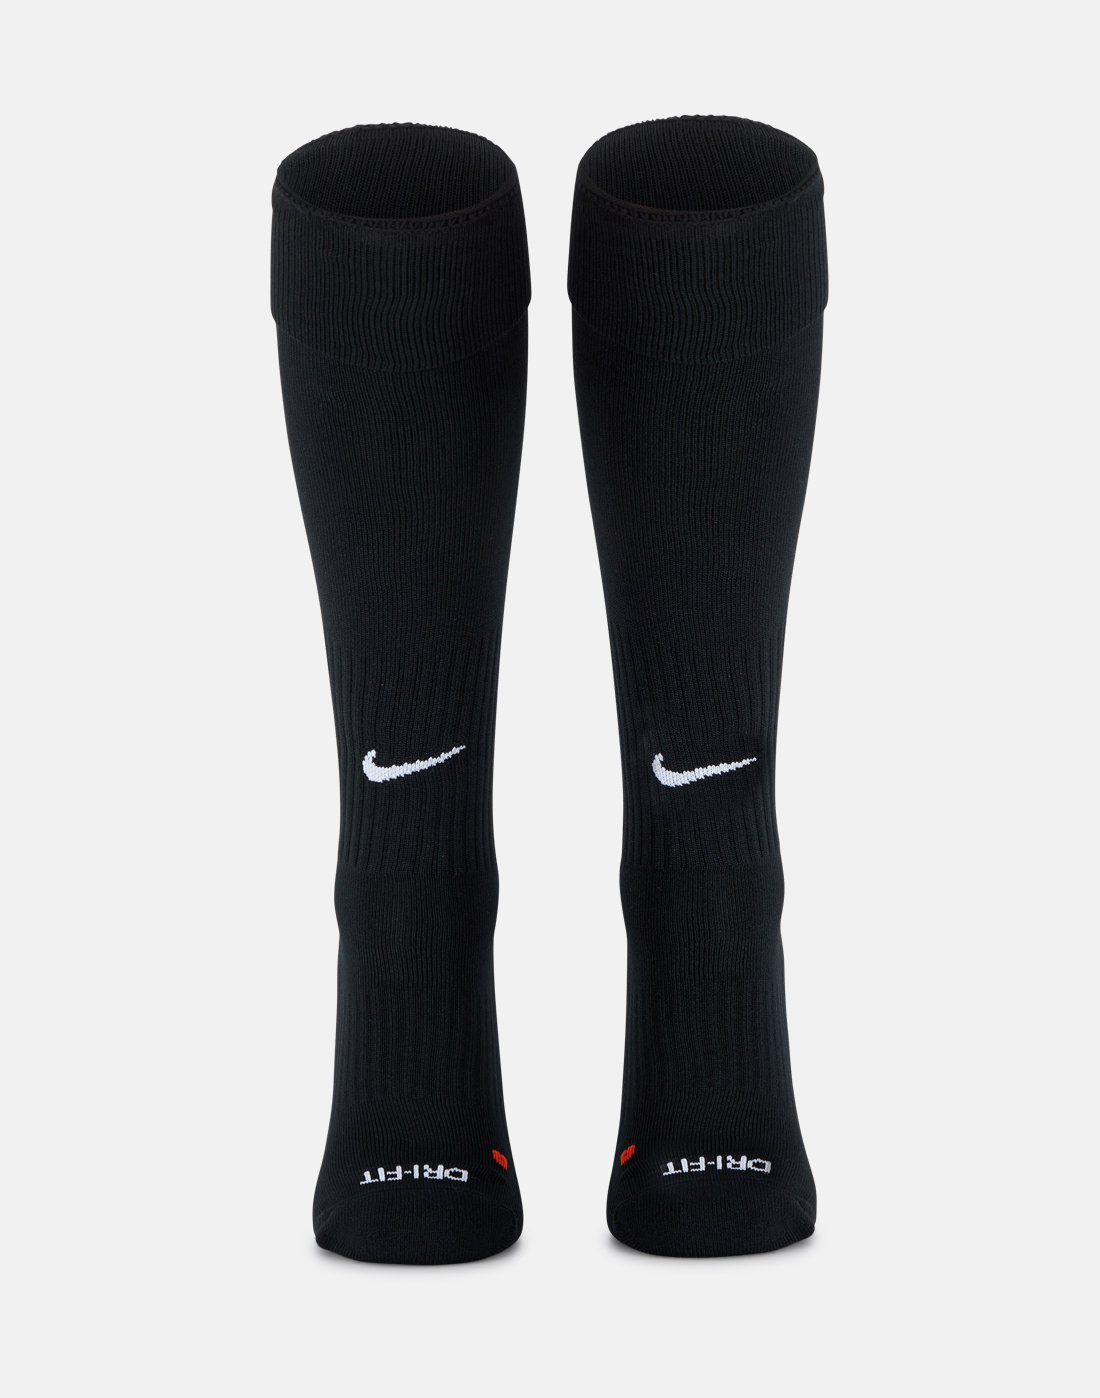 Nike Adult Classic Dri-Fit Football Sock | Black | Life Style Sports